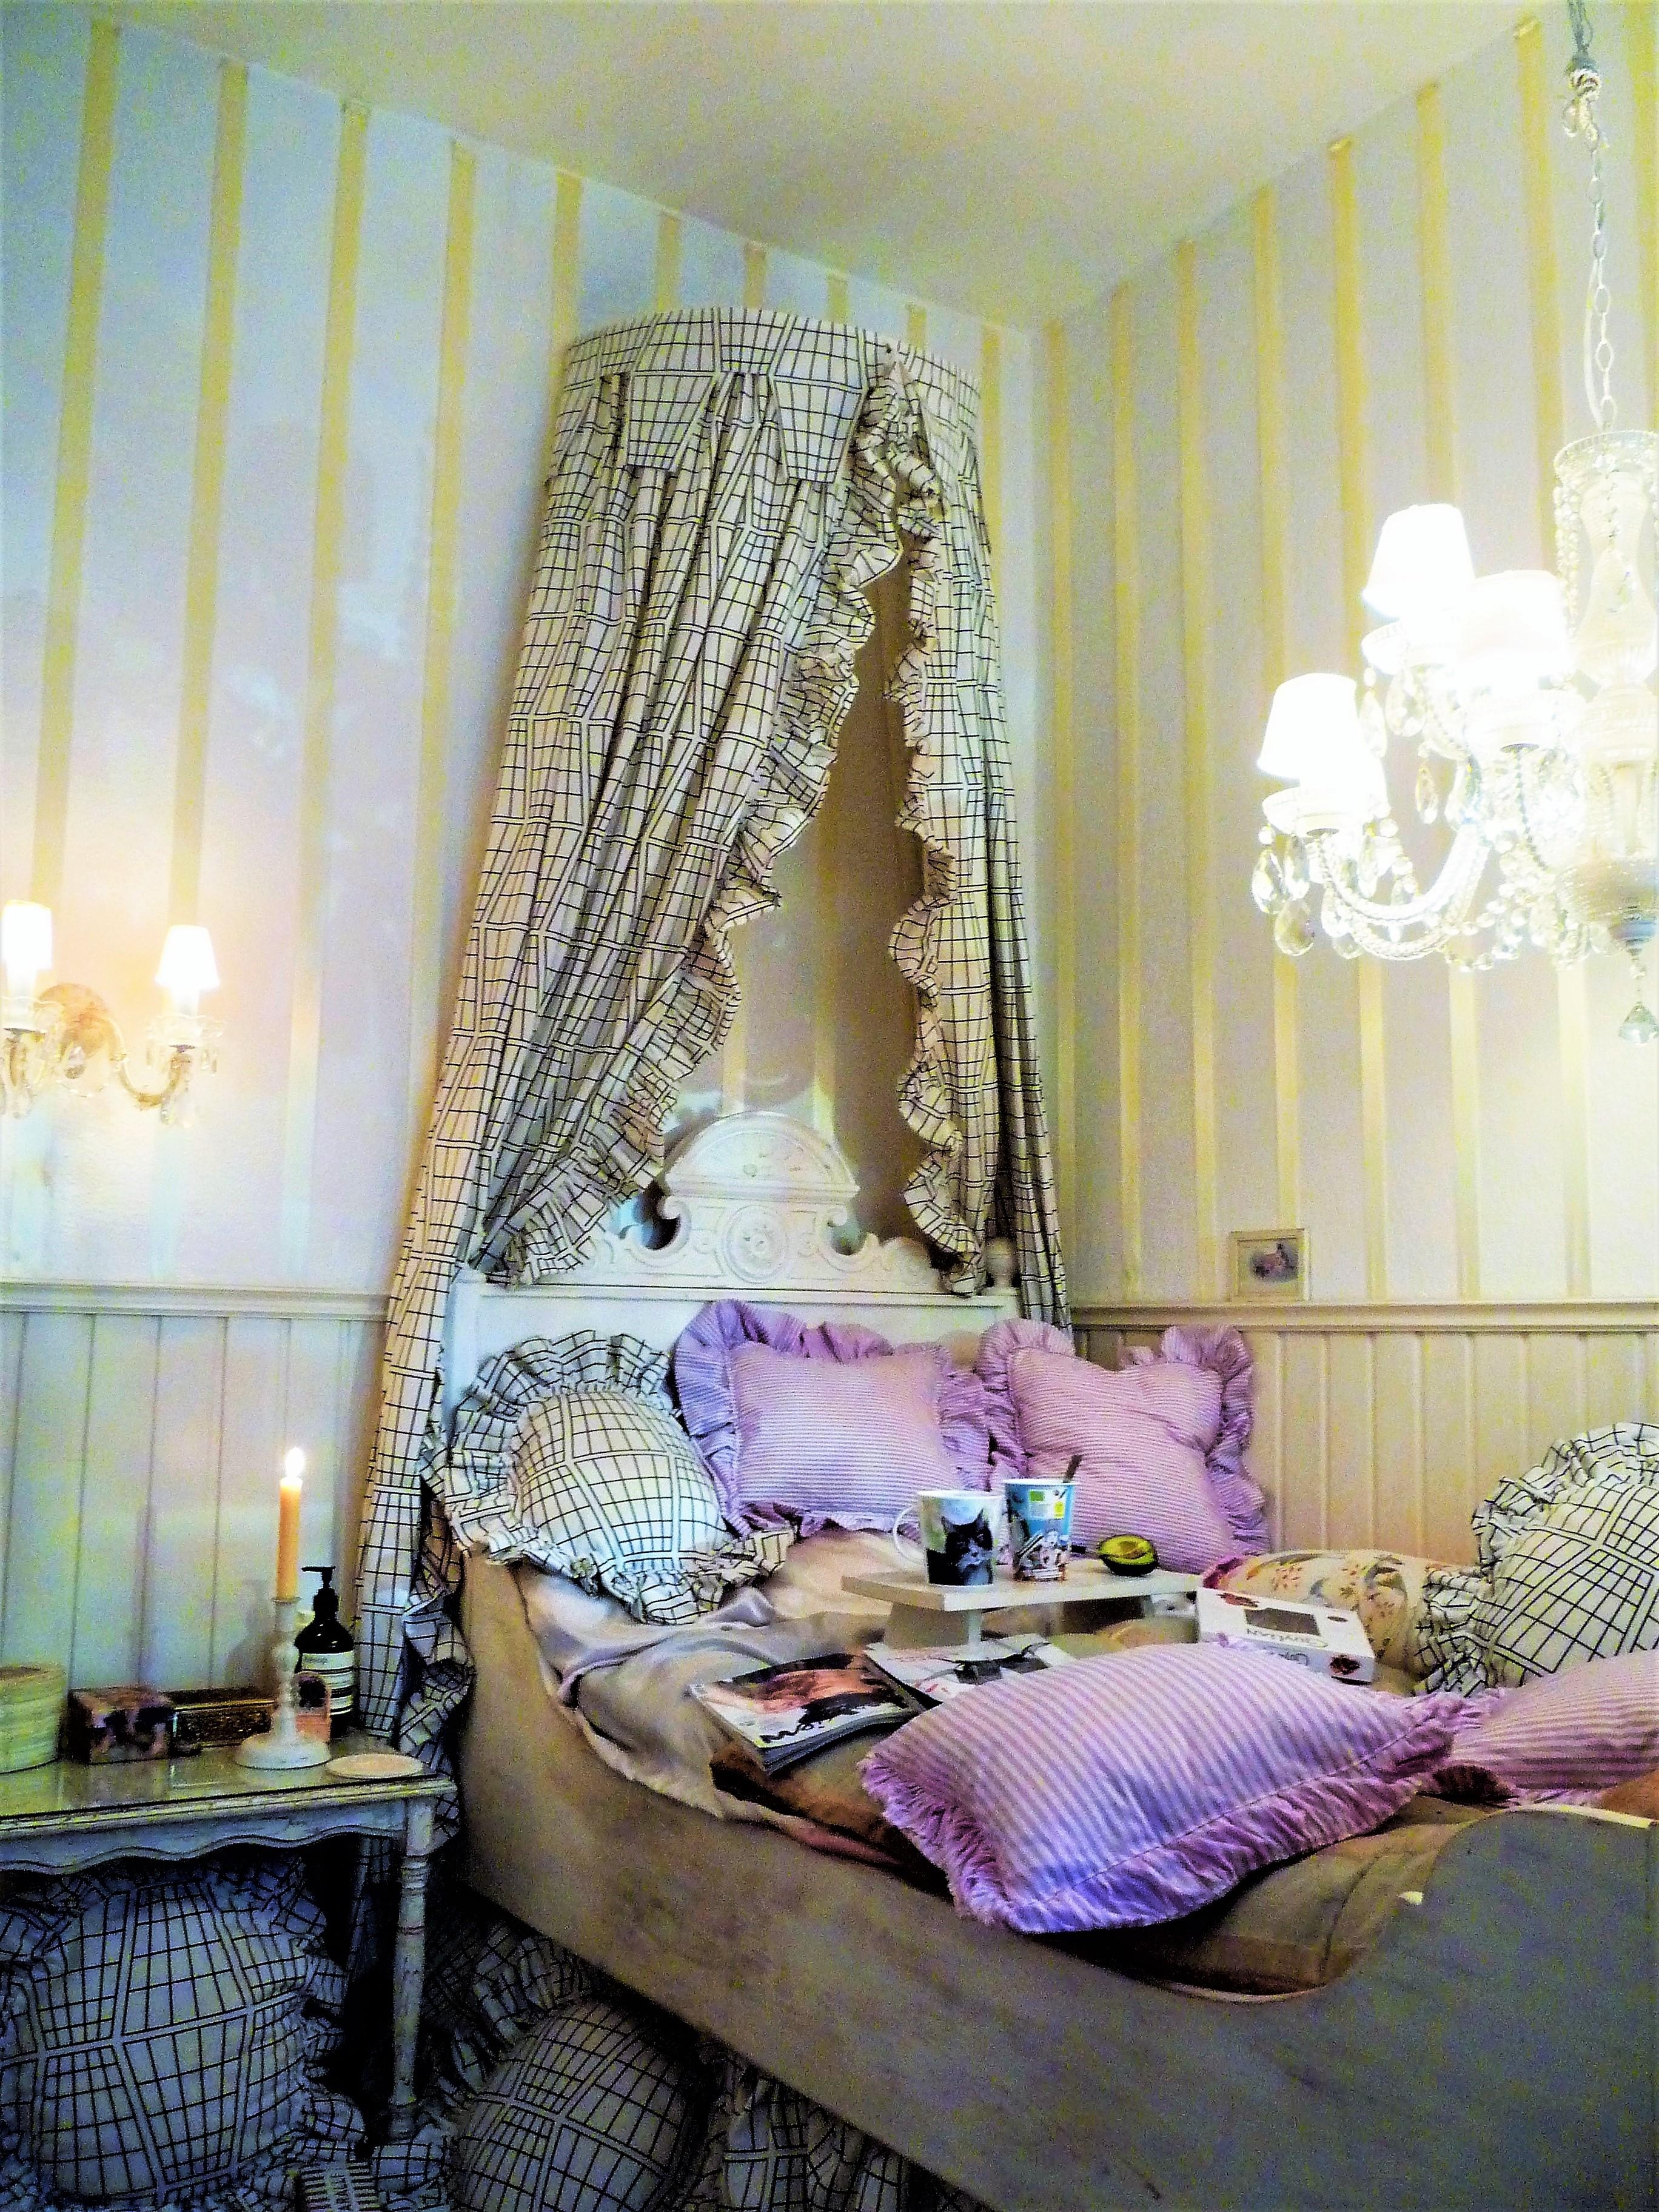 Mein #lieblingsraum ist das sehr kleine Schlafzimmer. ♥ #livingchallenge #textildesign von Linda Svensson 